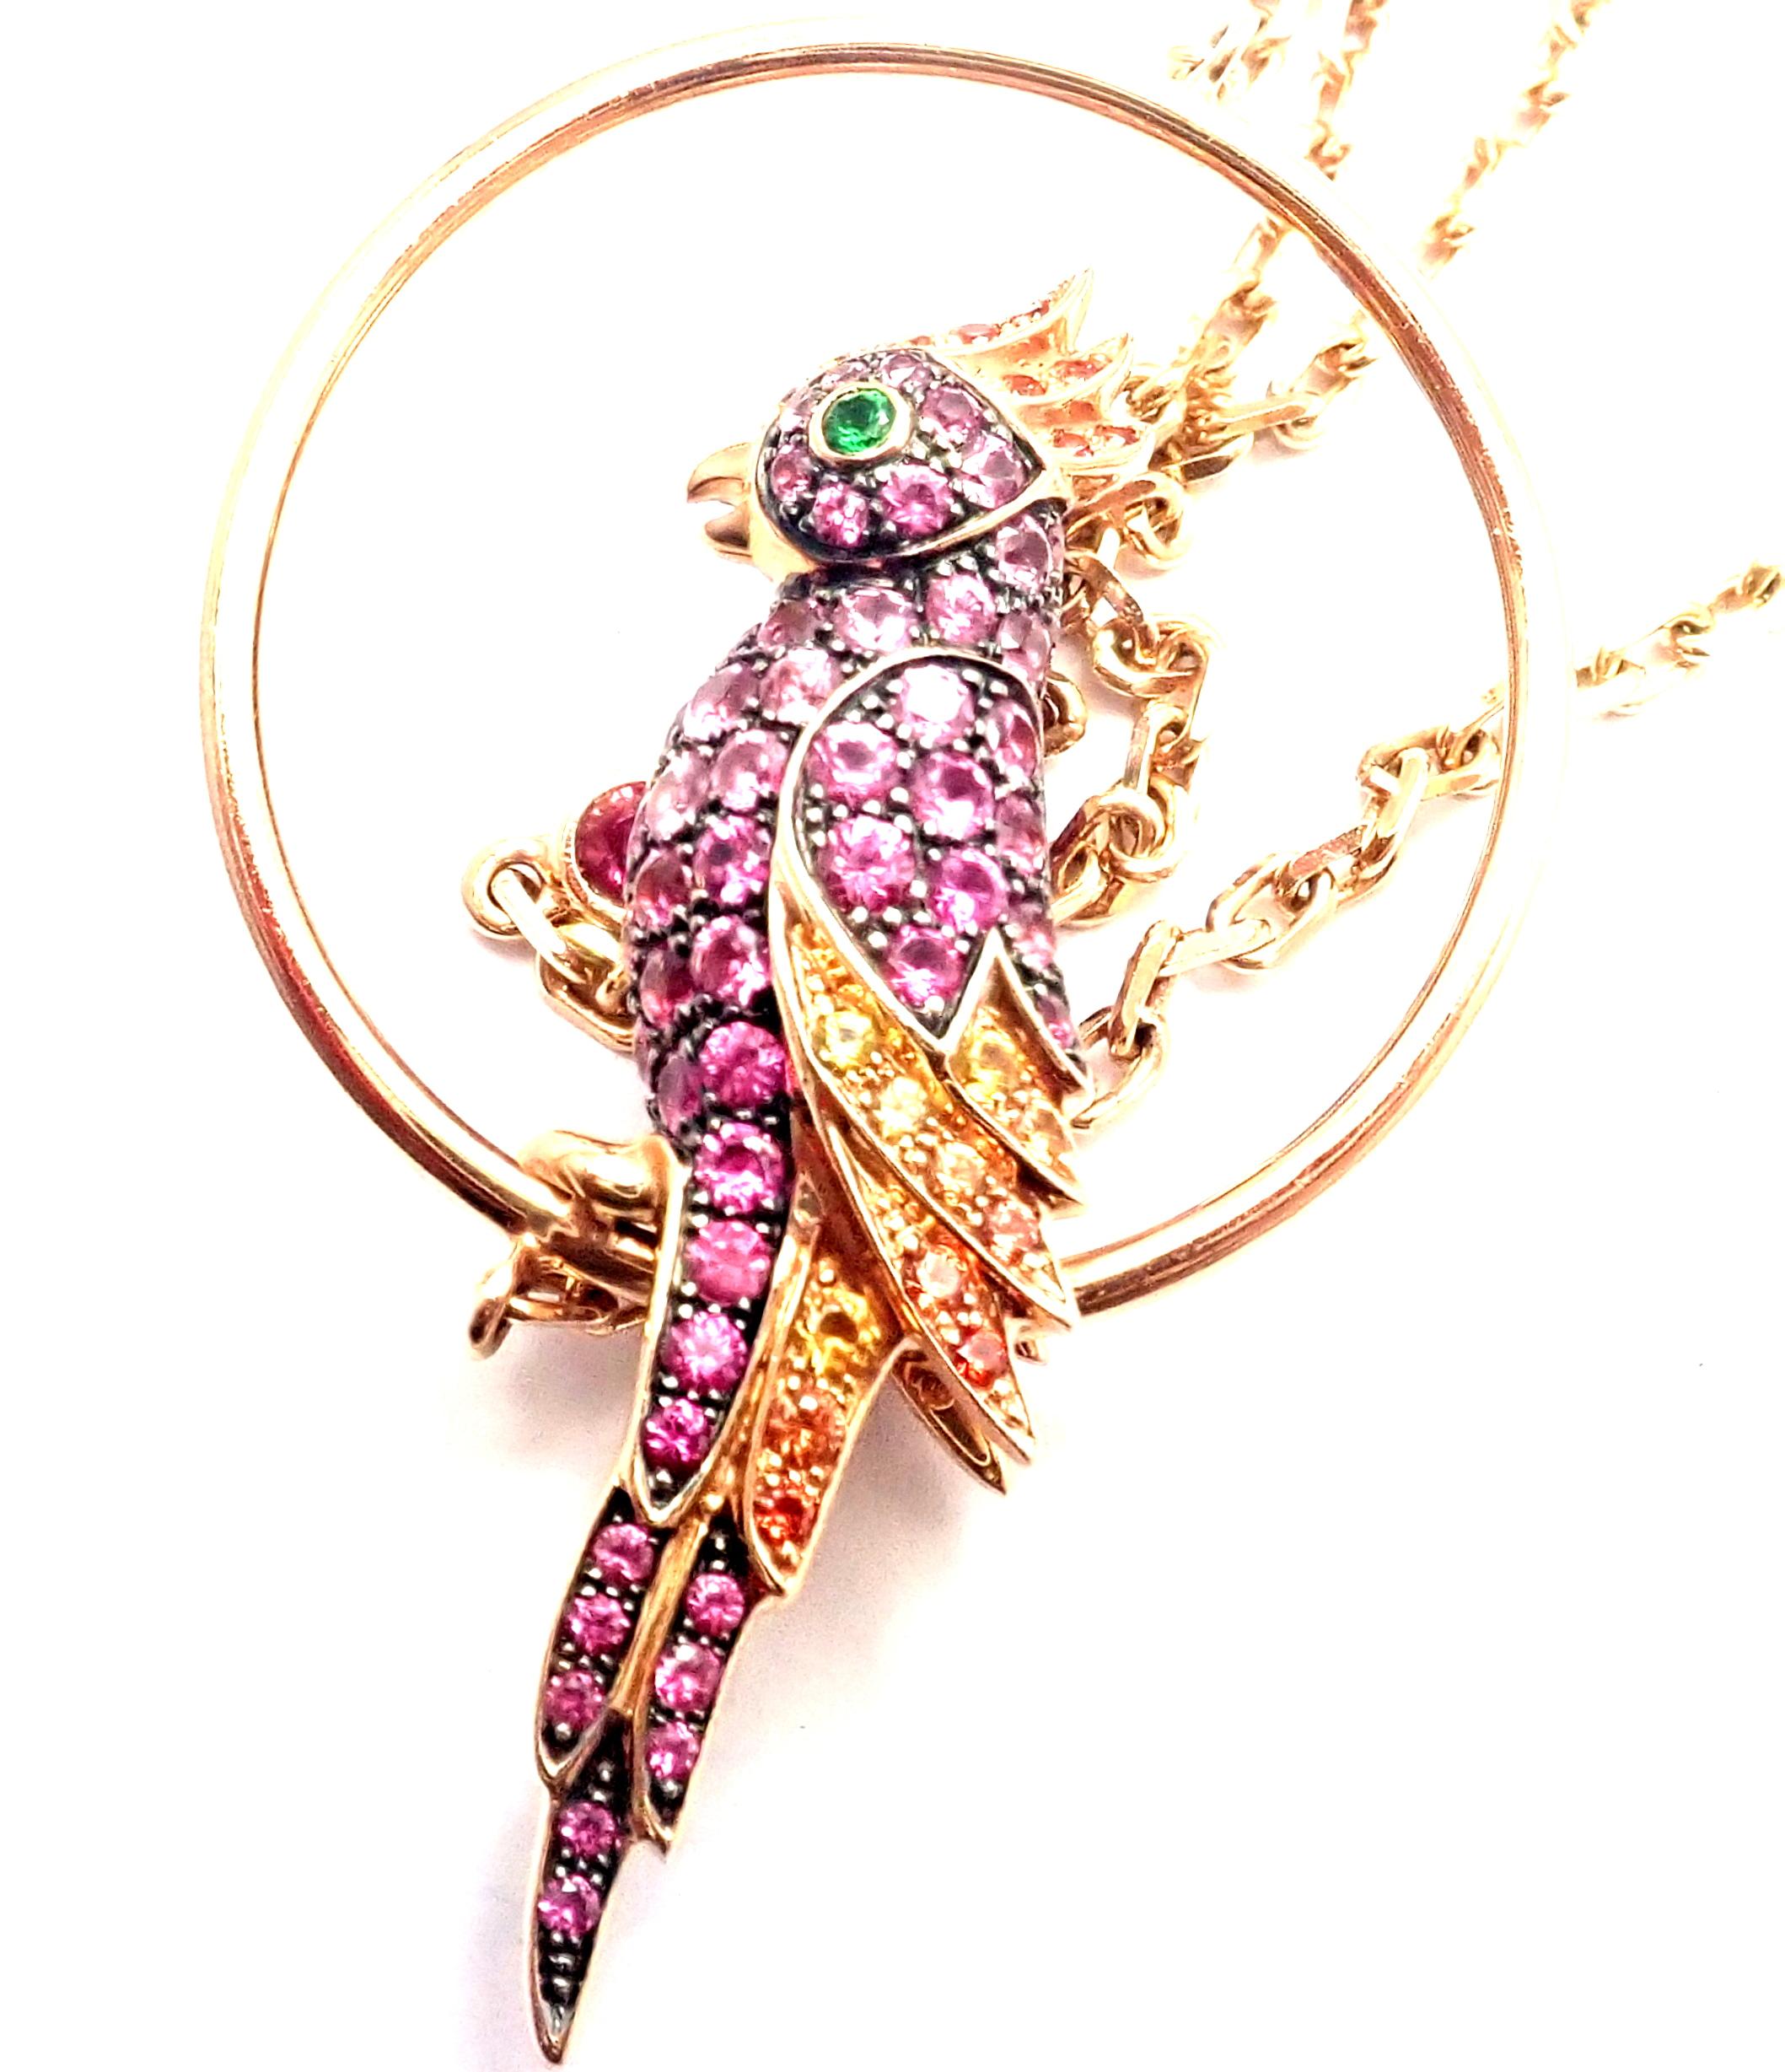 Brilliant Cut Boucheron Nuri Parrot Diamond Color Sapphire Tsavorite Rose Gold Long Necklace